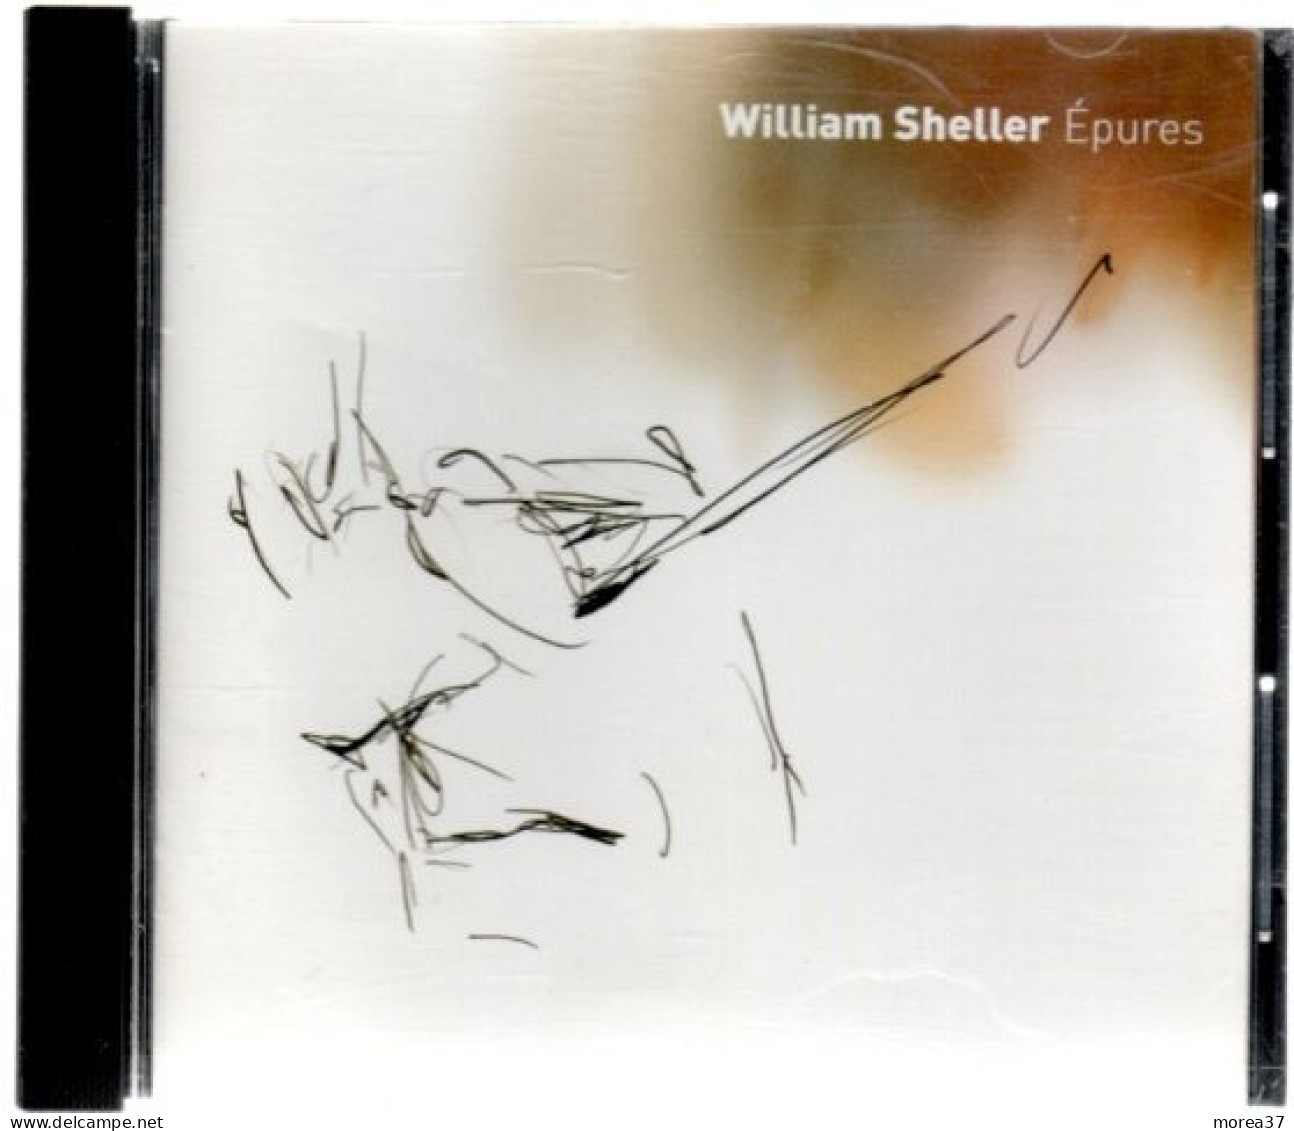 WILLIAM SHELLER  Epures       (REF CD 2) - Autres - Musique Française